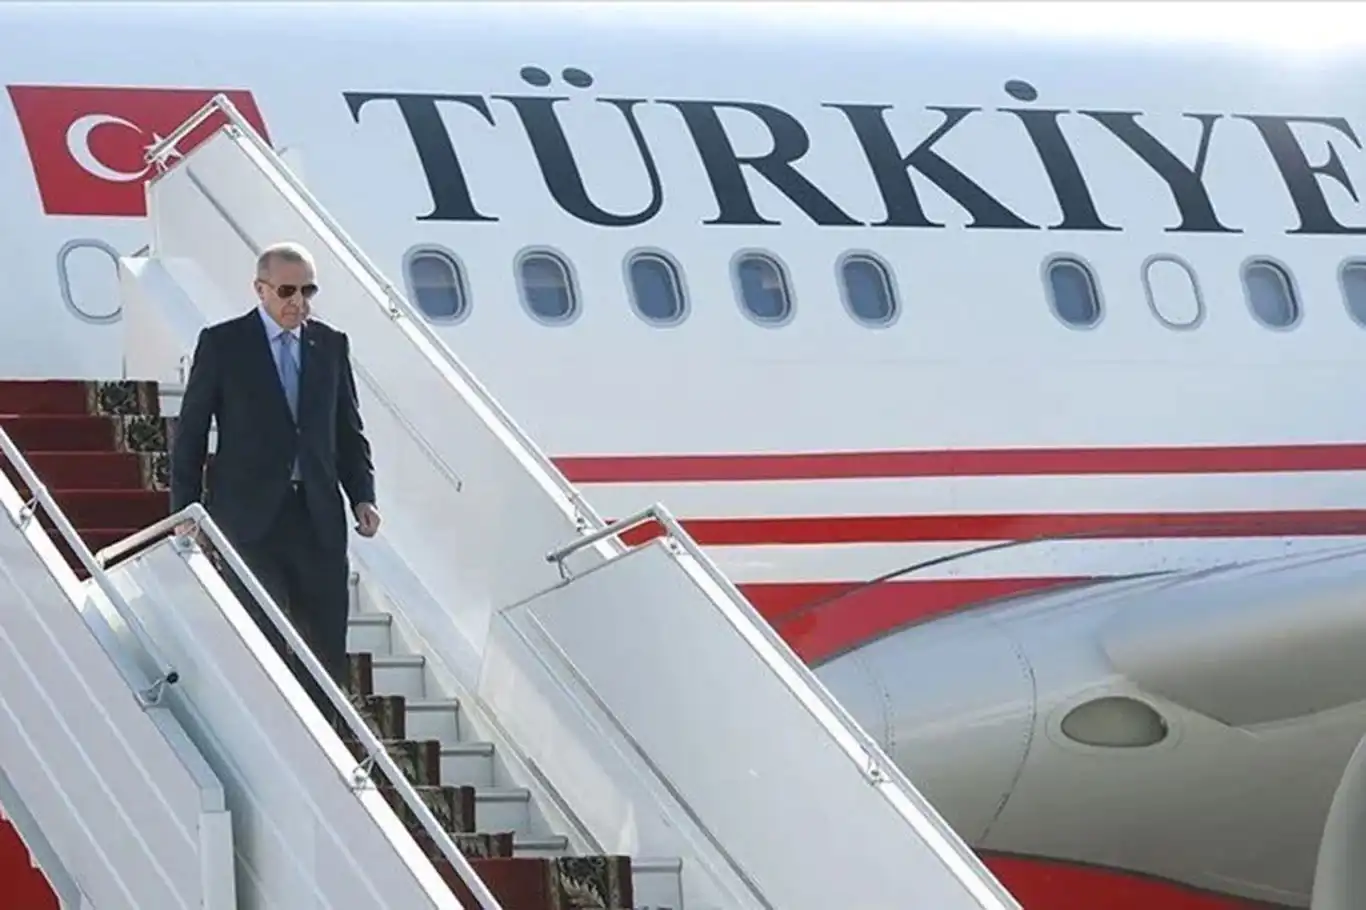 Erdoğan to attend NATO summit in Washington D.C.